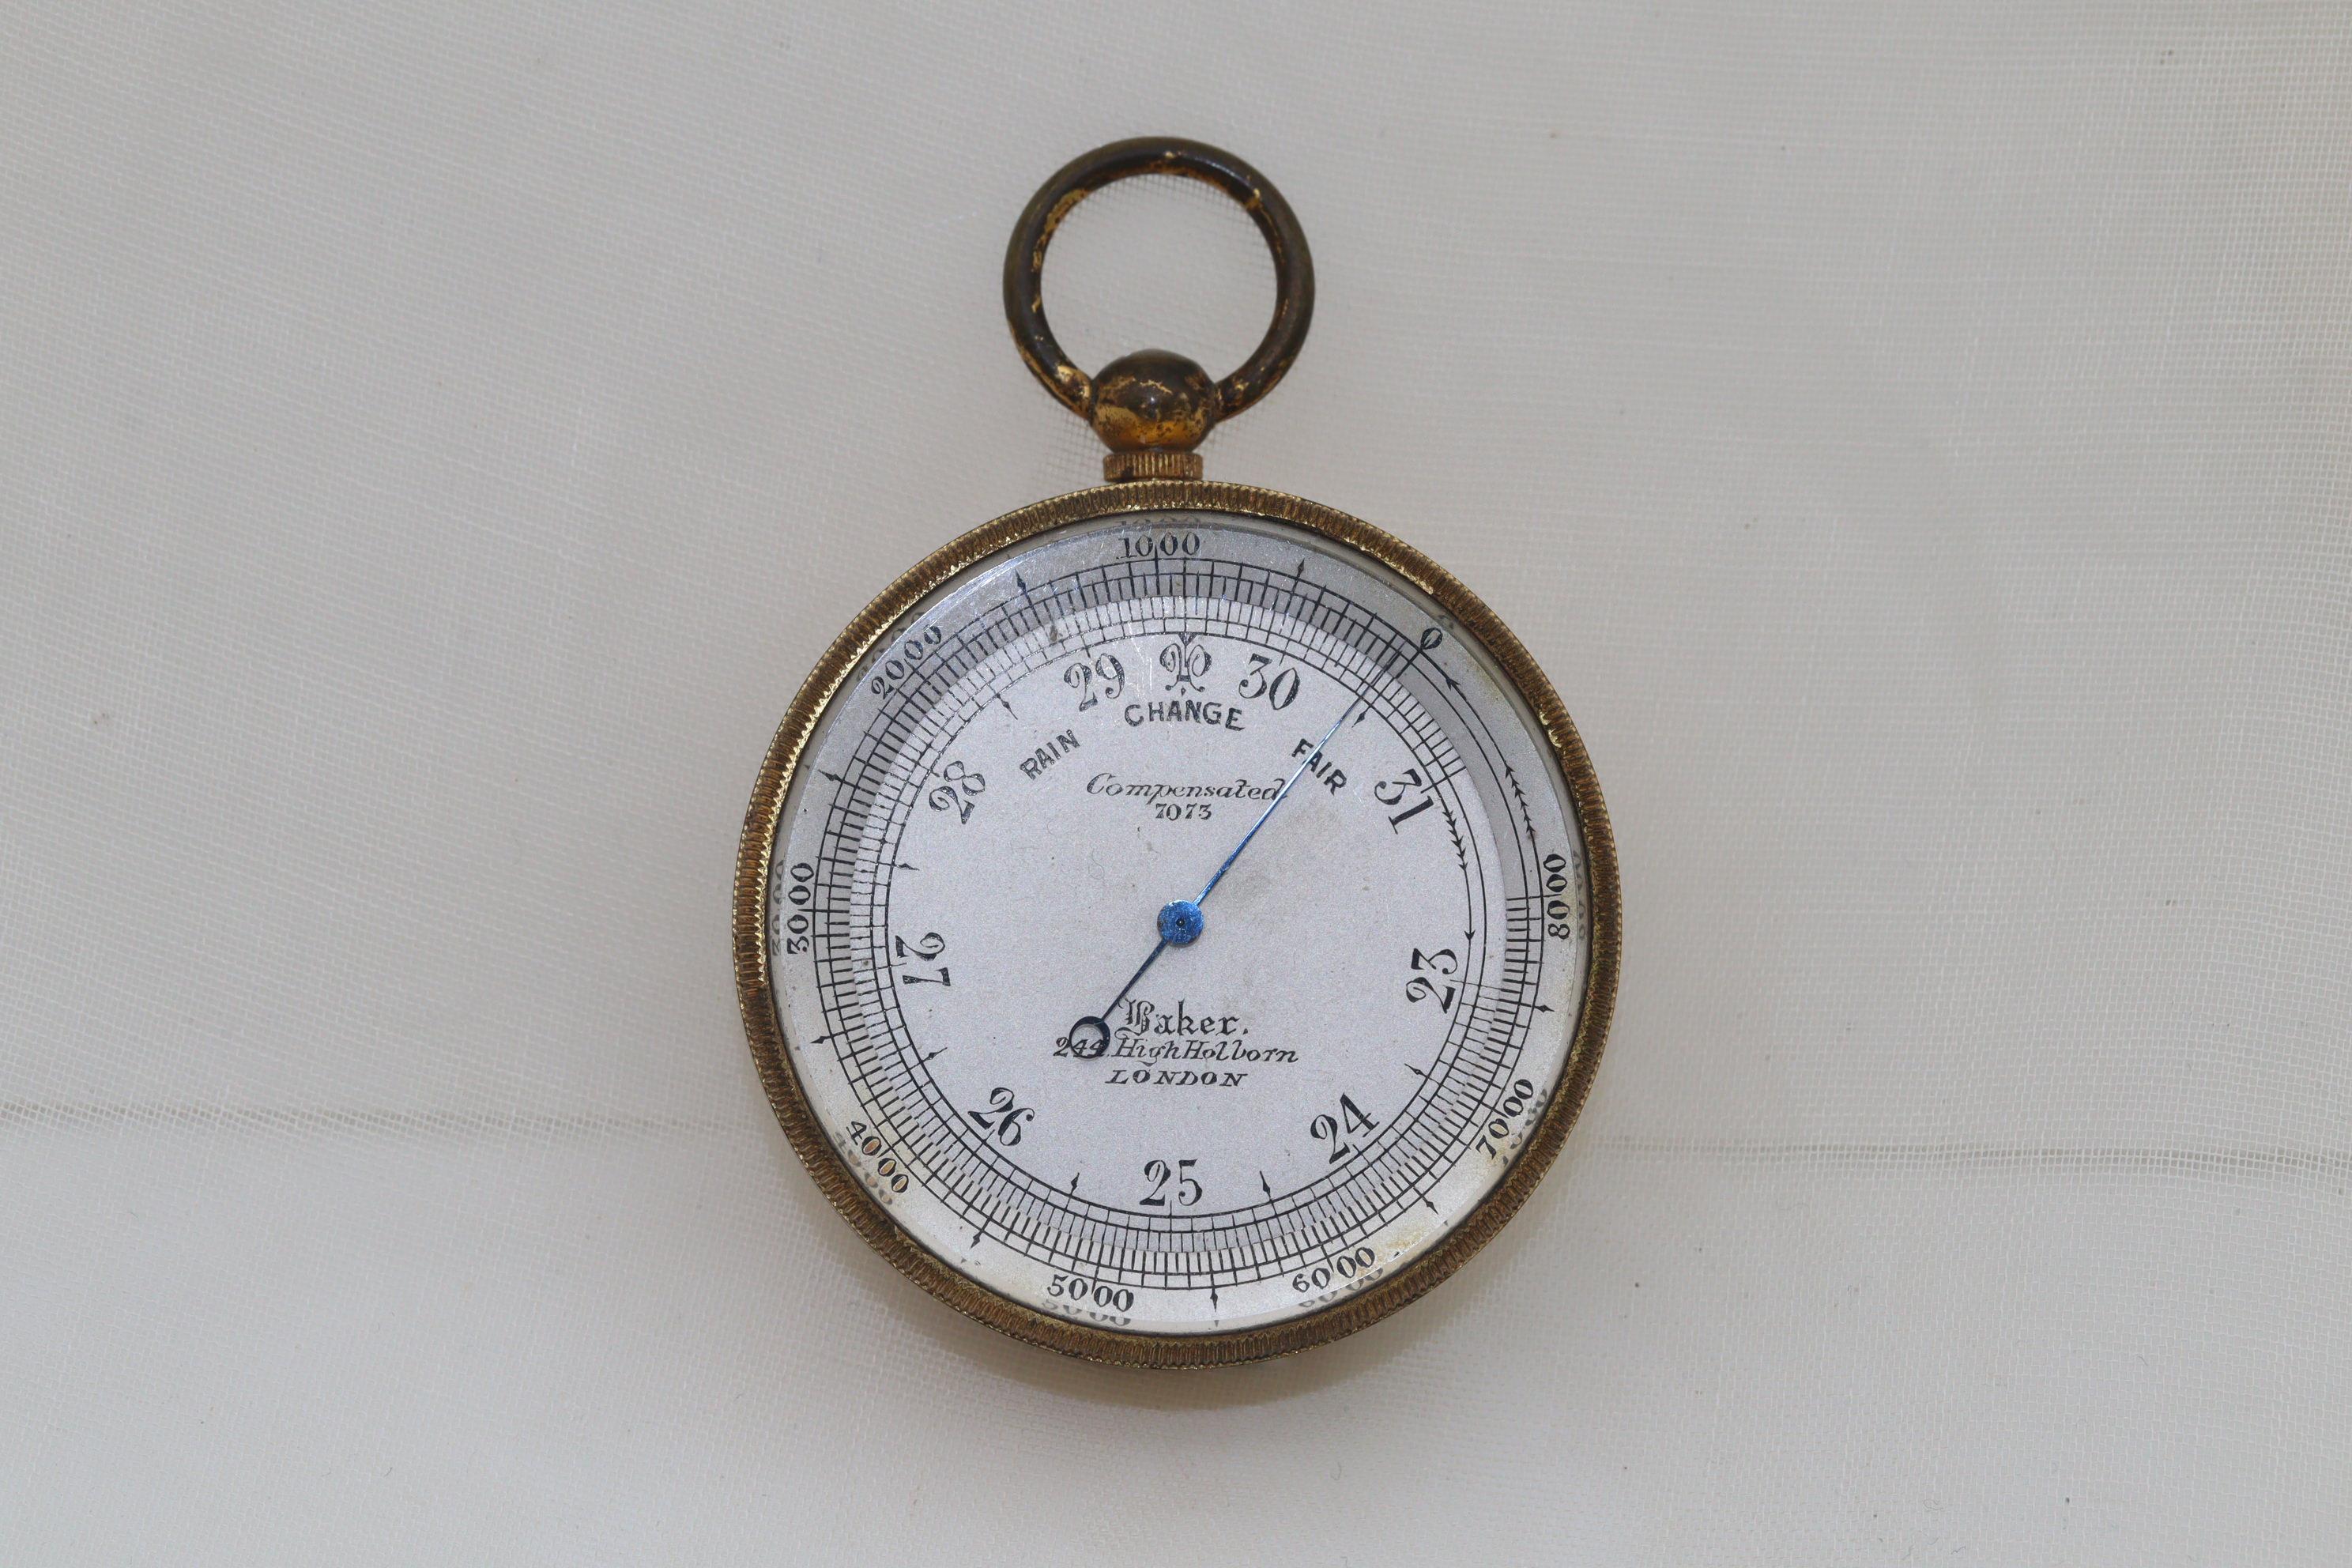 Dieses Taschenbarometer wurde von der Firma C. Baker, 244 High Holborn, London, hergestellt und befindet sich noch immer in seinem lederbezogenen Originaletui. Die Modellnummer lautet 7073, und das versilberte Zifferblatt mit dem gebläuten Zeiger